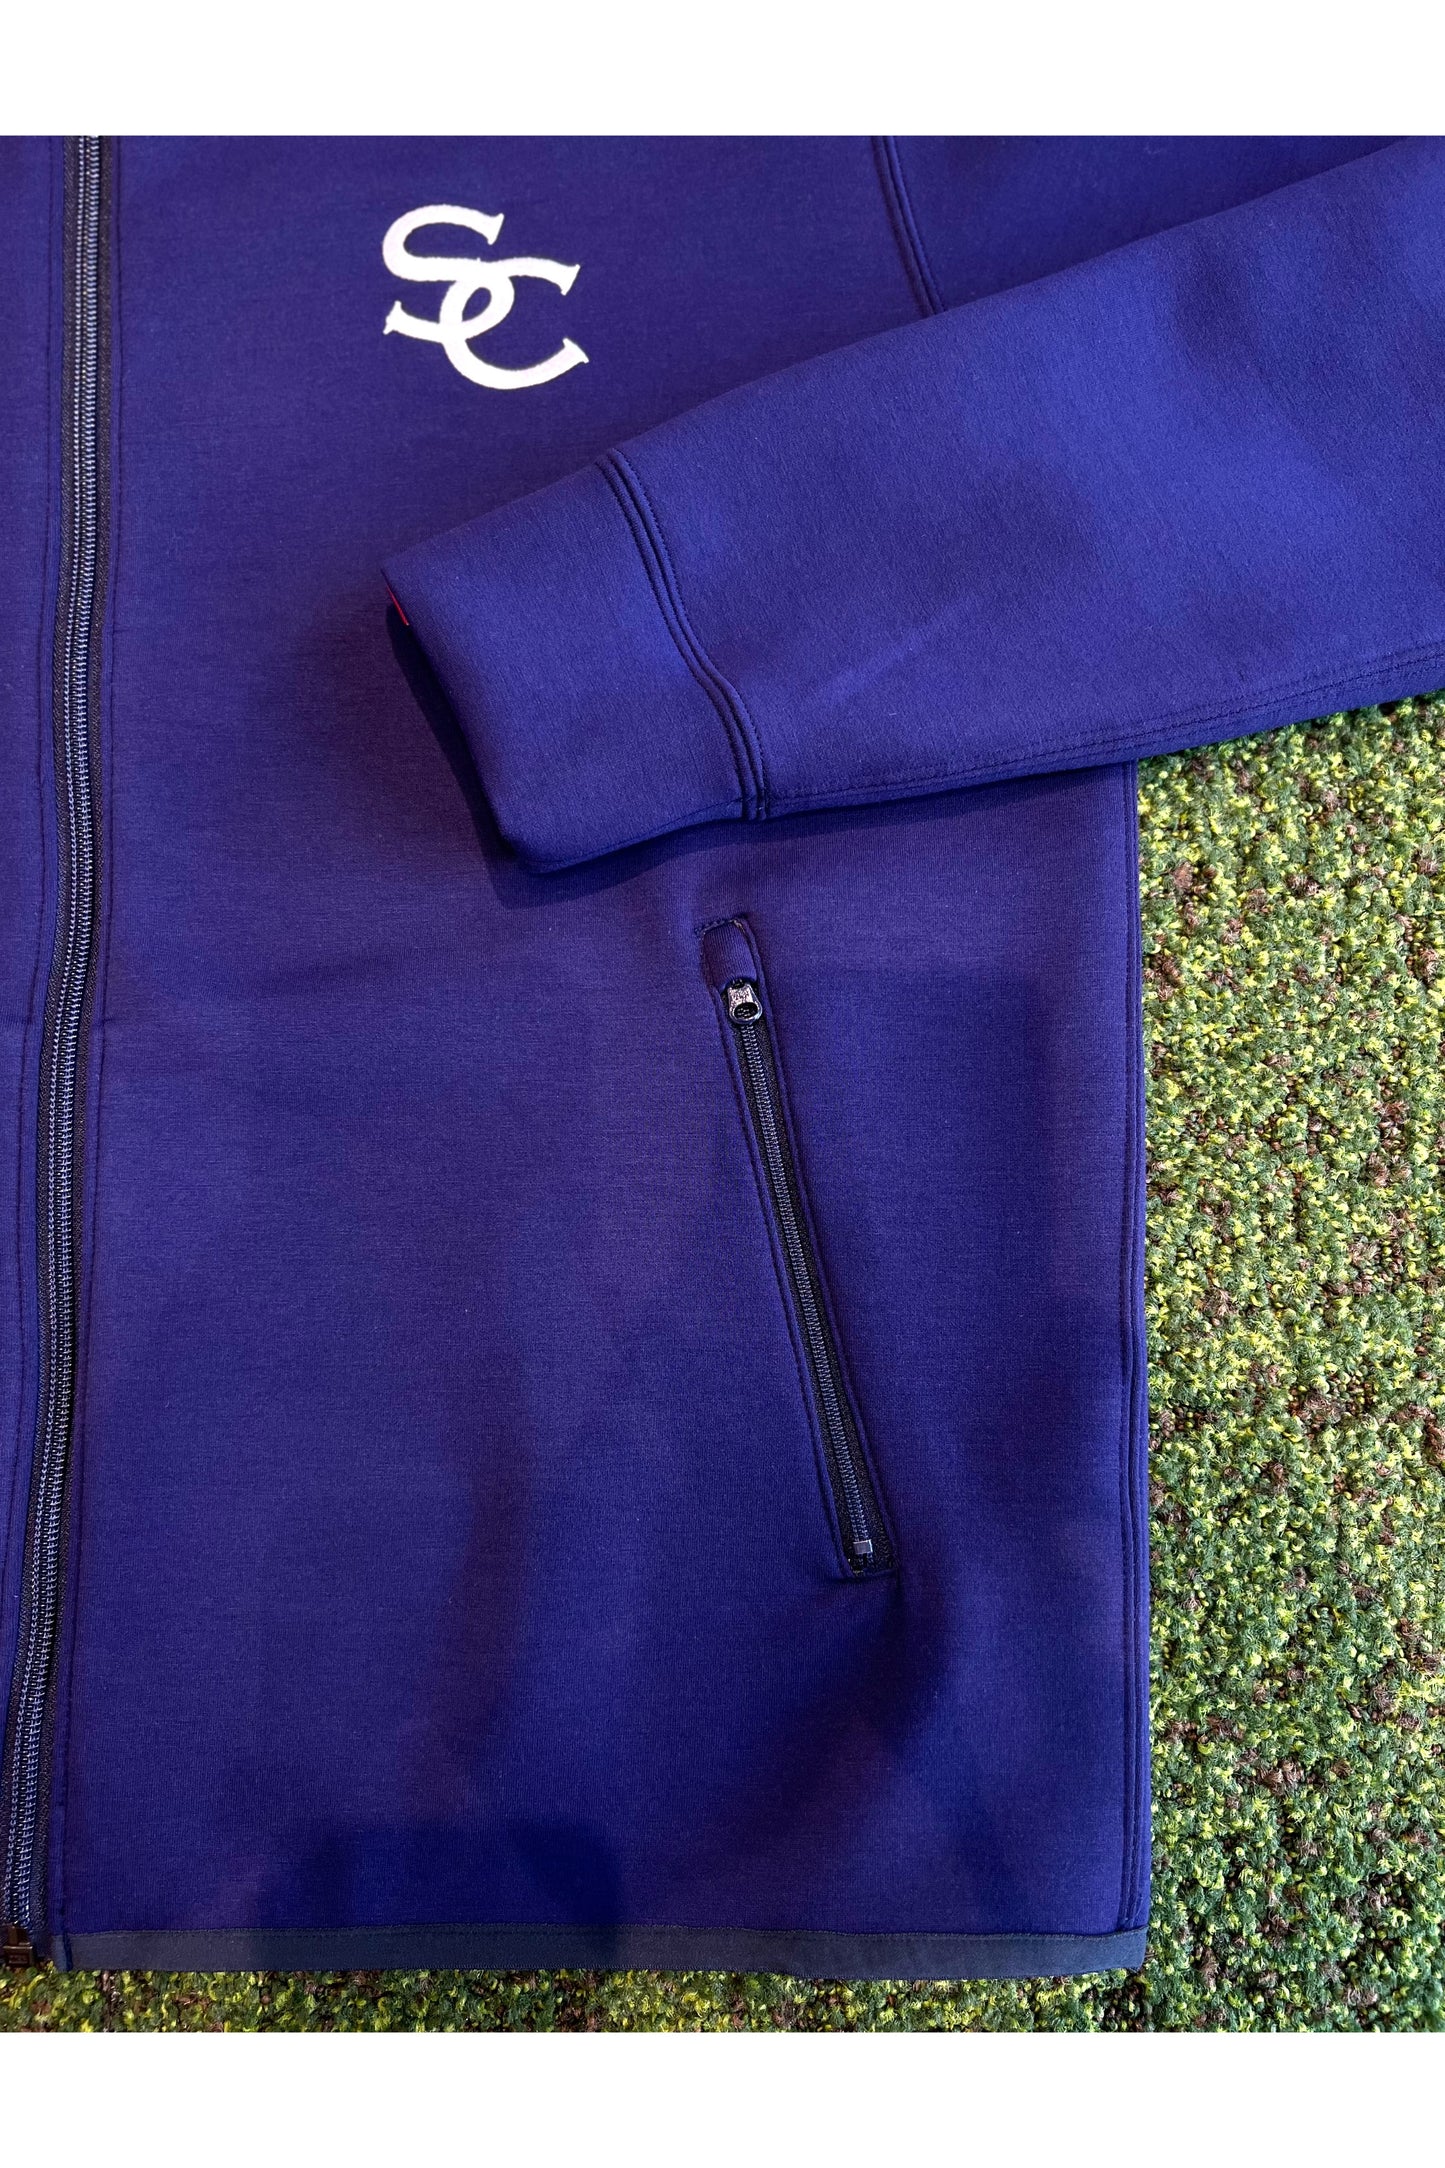 オシャレなメンズゴルフウェア  スポーティでカジュアルライクなパーカーのポケットはジッパー仕様です。